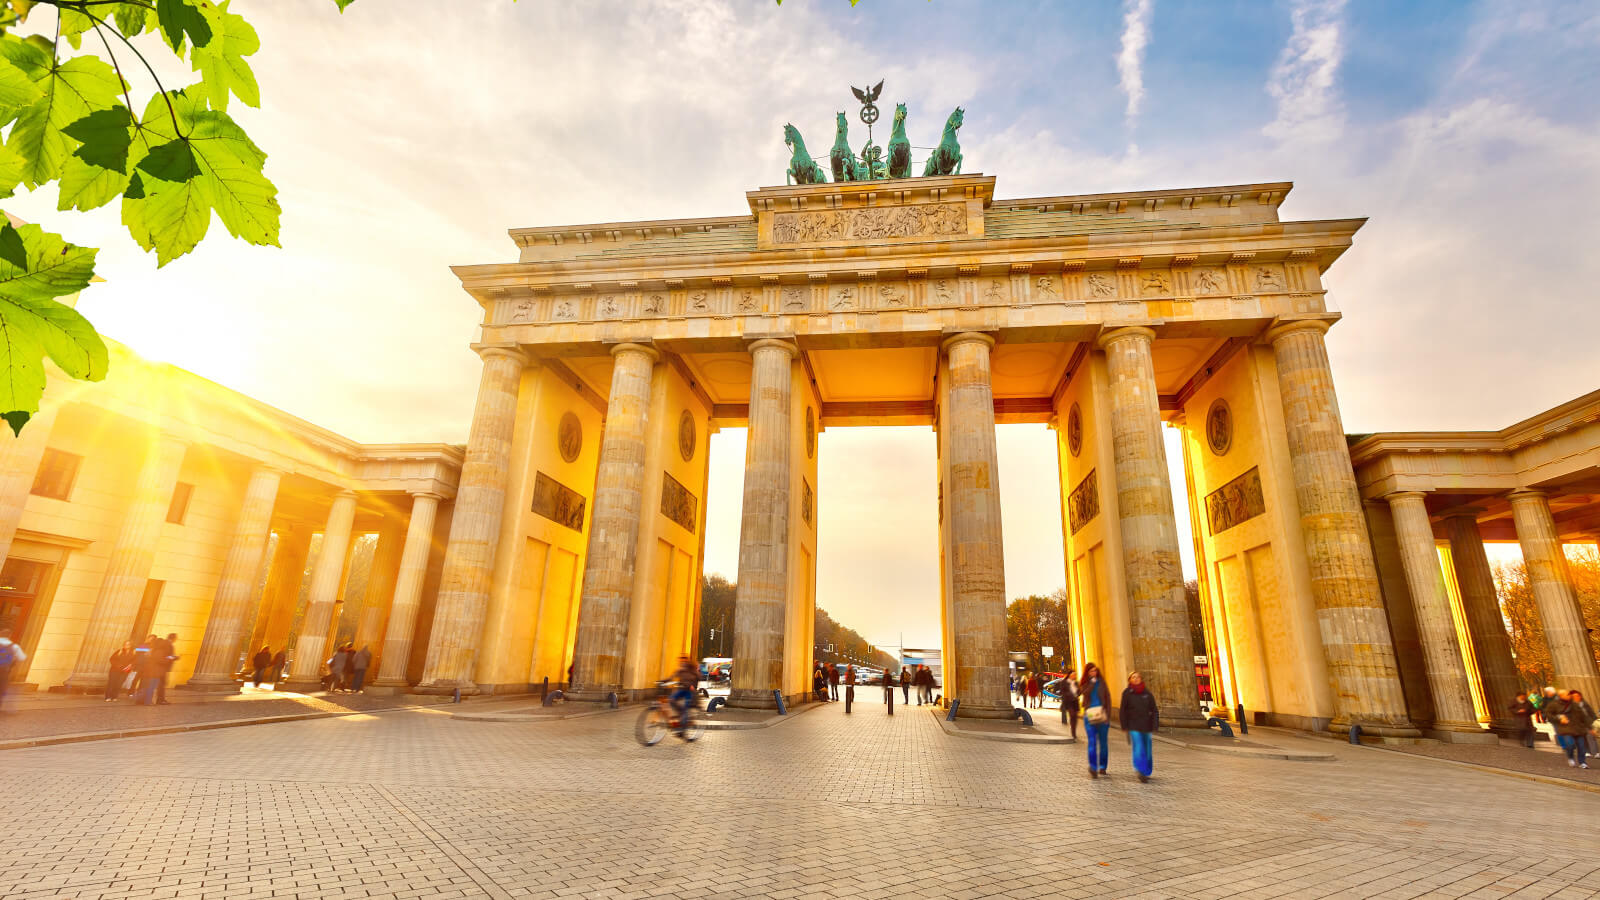 دروازه براندنبرگ یکی از نمادهای شهر برلین و پاسخی به طاق پیروزی پاریس است.